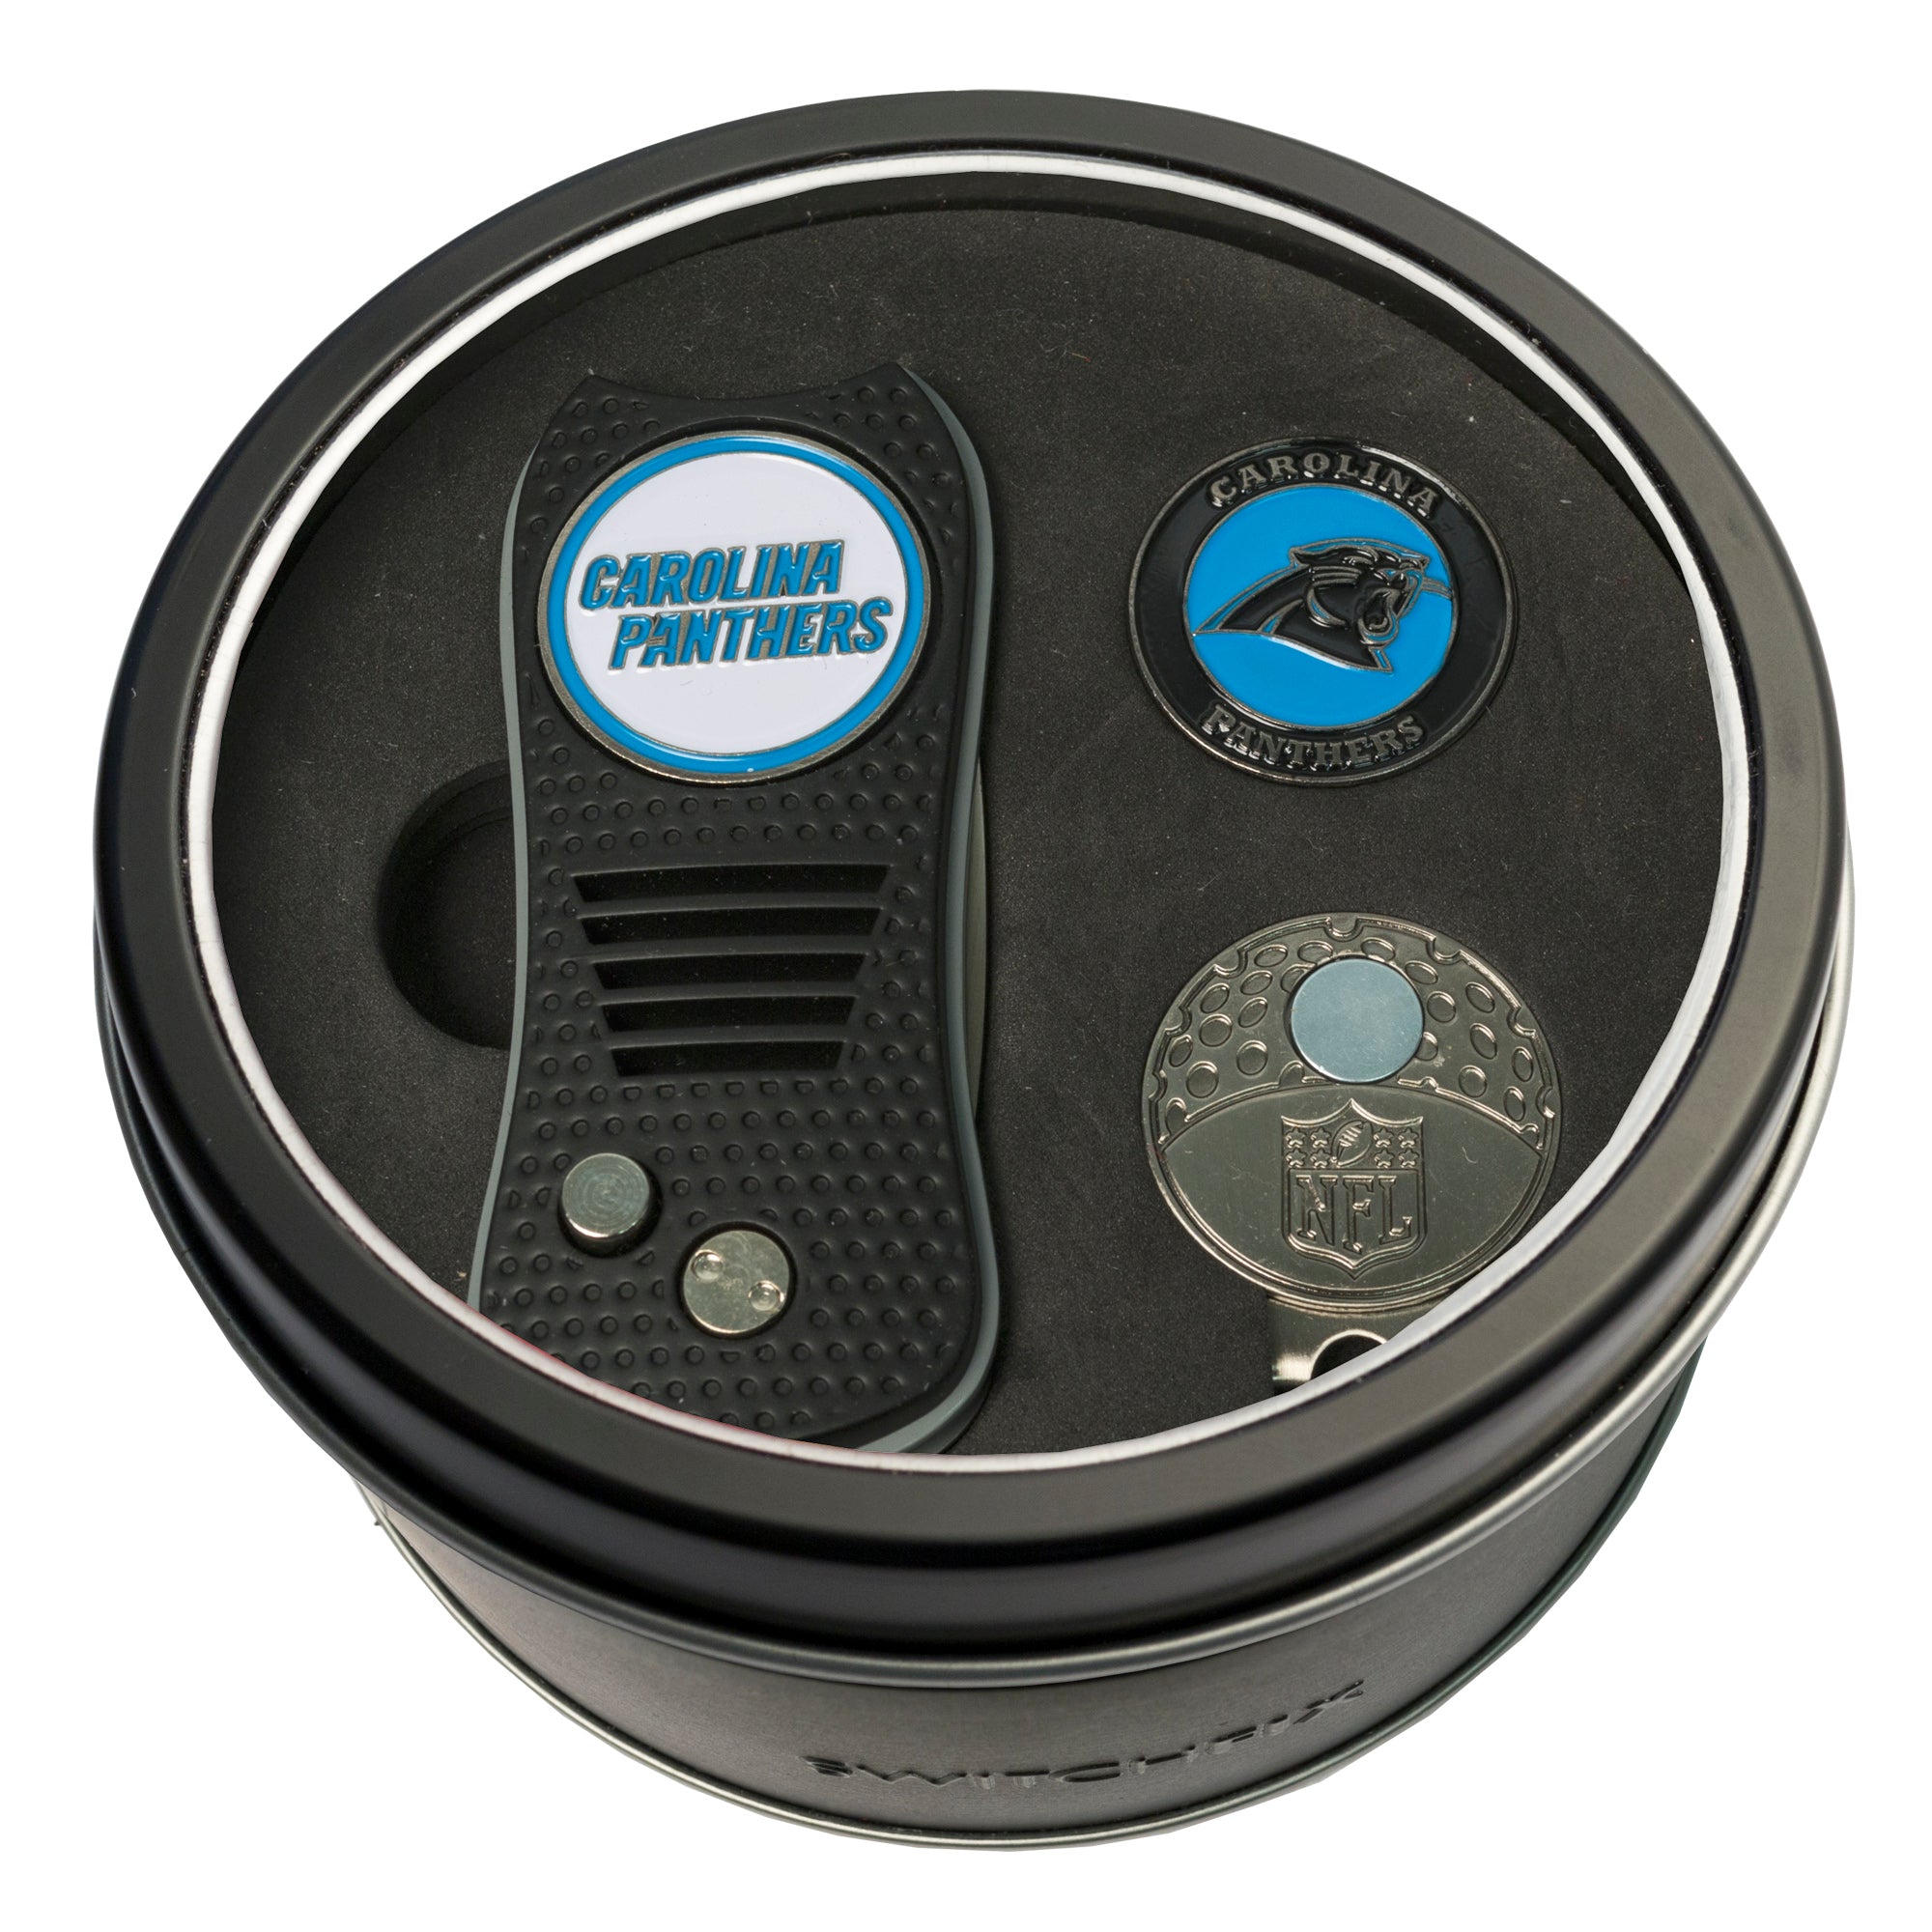 Carolina Panthers Switchblade Divot Tool + Cap Clip + Ball Marker Tin Gift Set